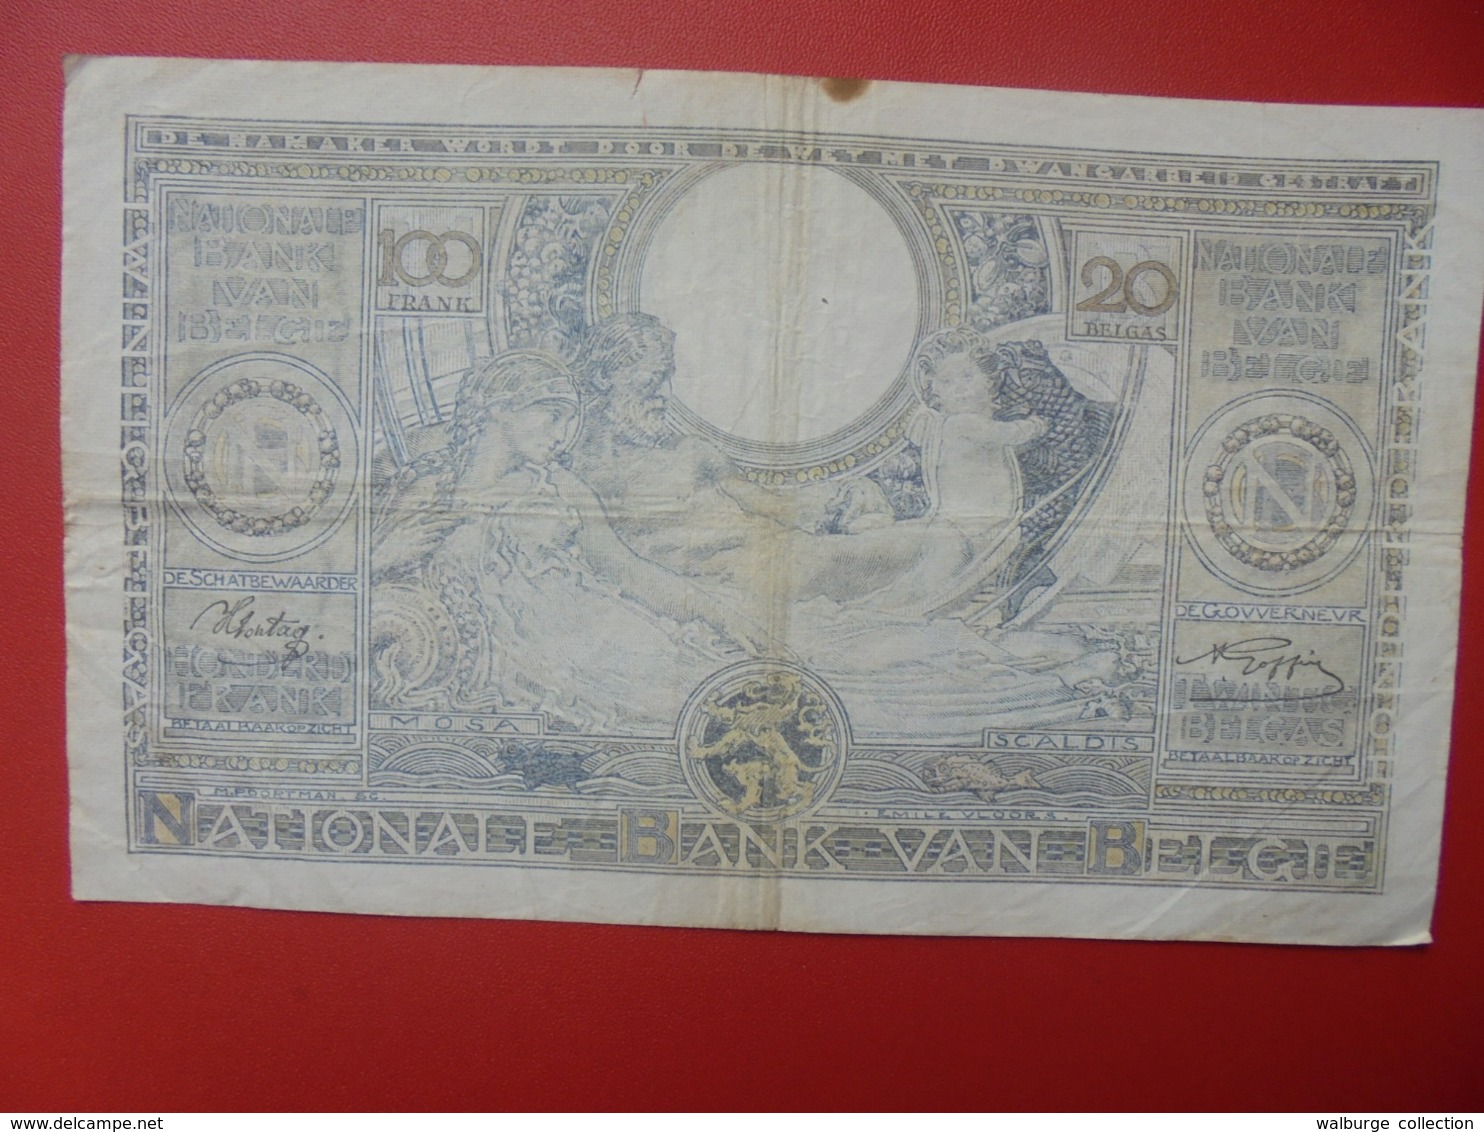 BELGIQUE 100 FRANCS 24-11-41 CIRCULER (B.7) - 100 Francs